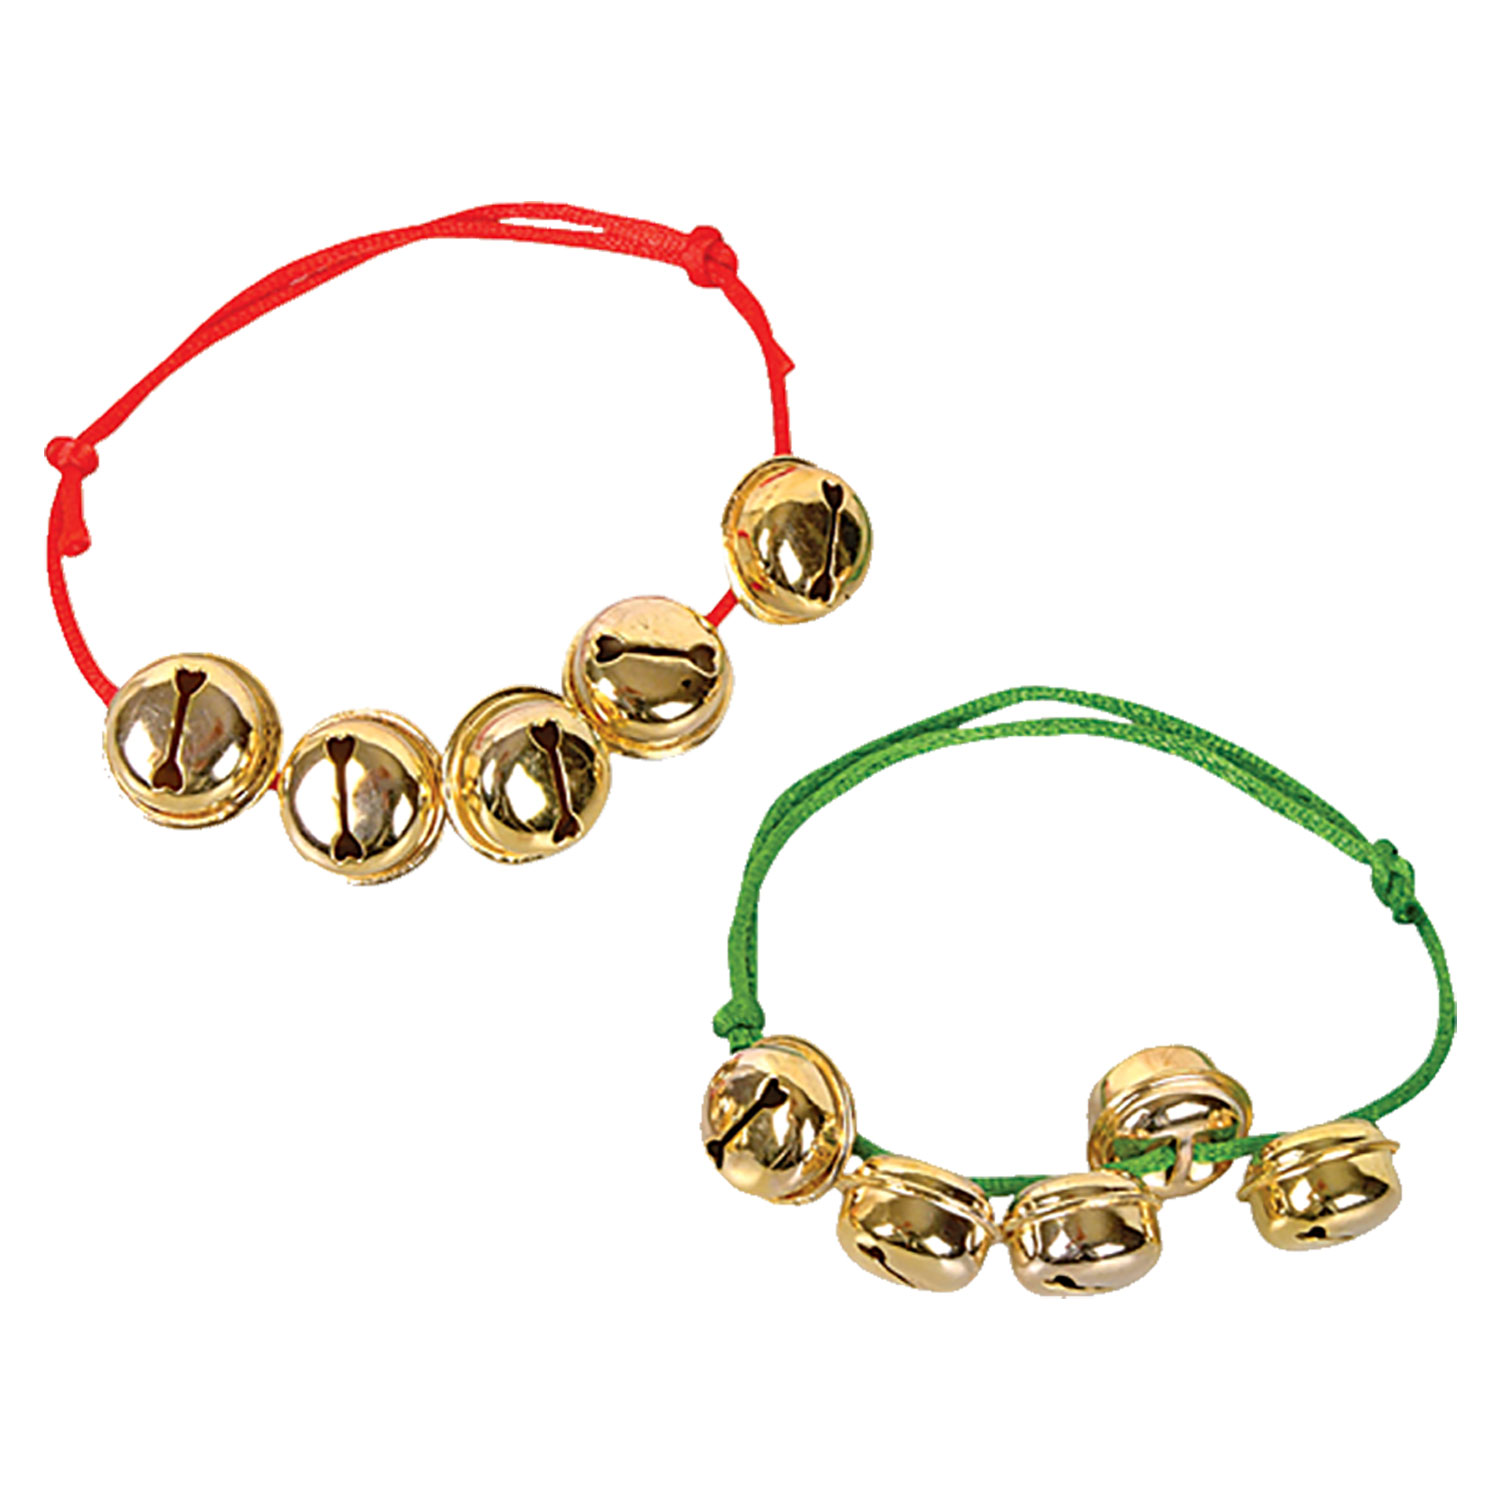 Handmade Leather Jingle Bell Bracelet, Red Bell's Bracelet Jewelry, Women's Bell  Bracelet, Holiday Jingle Bells Bracelet Cuff 